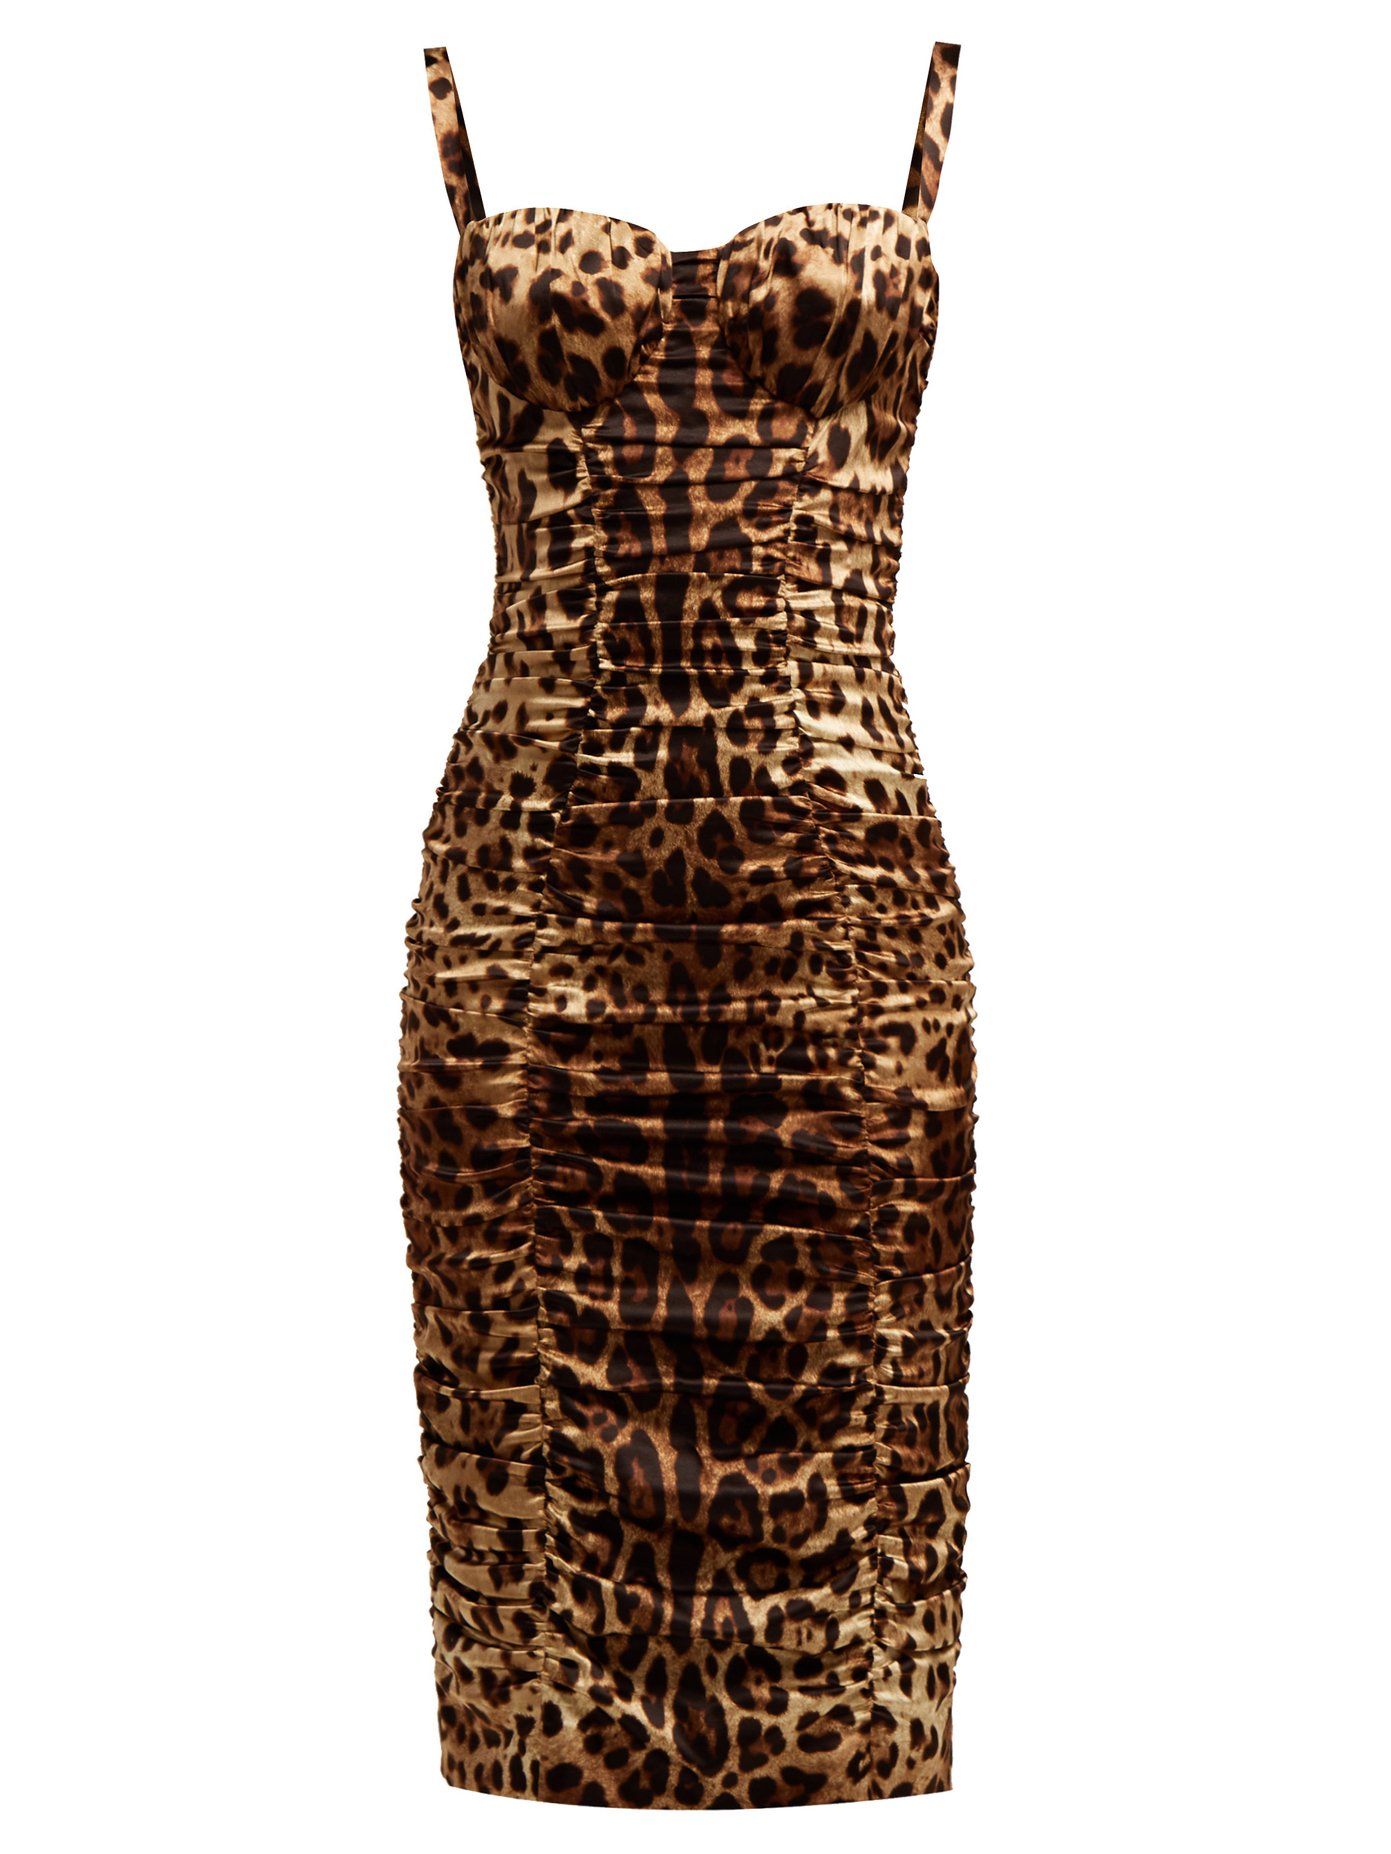 leopard print dress silk